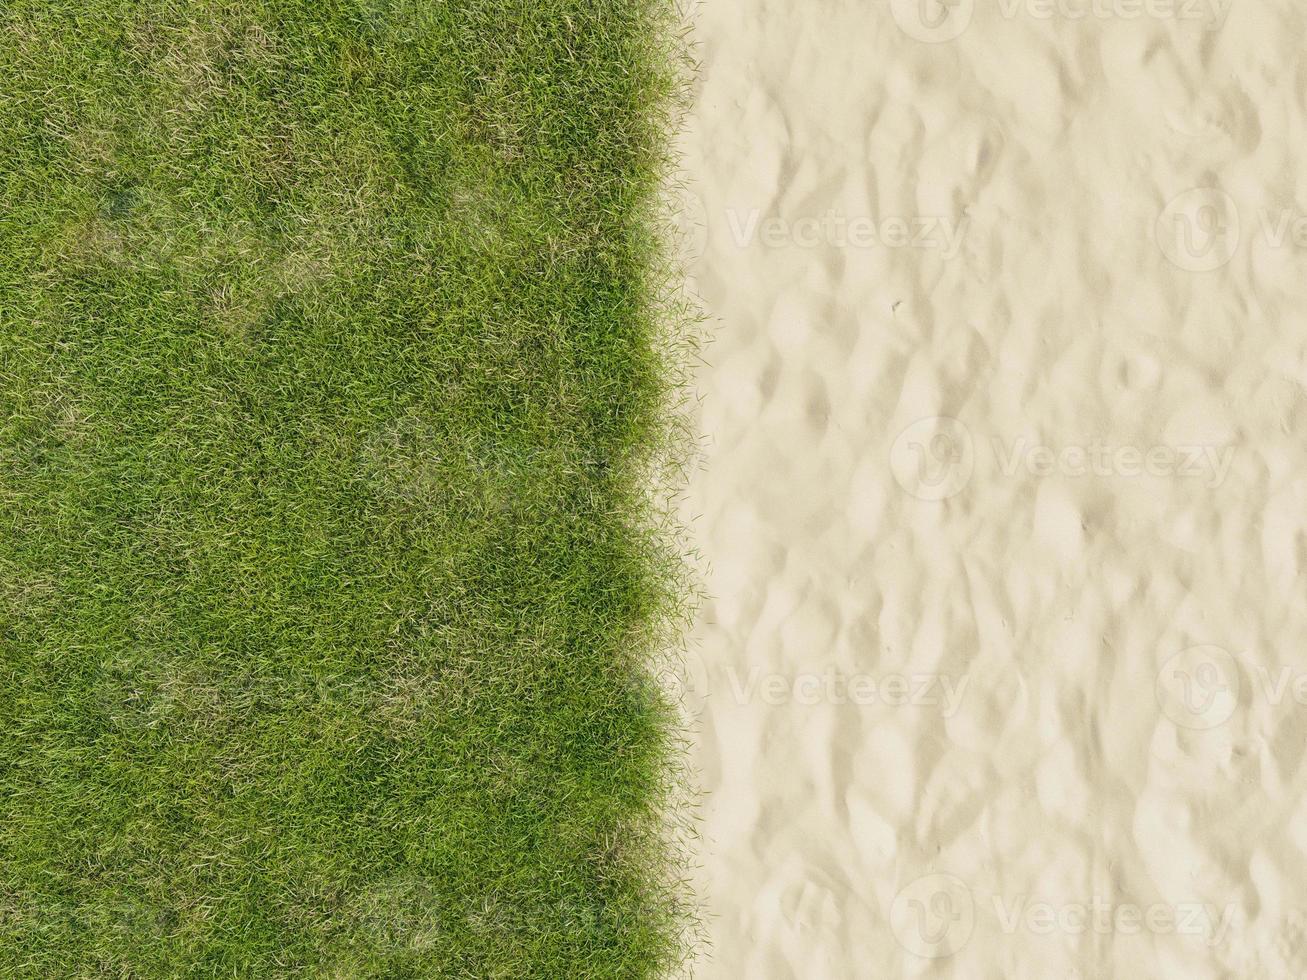 areia da praia e grama verde foto